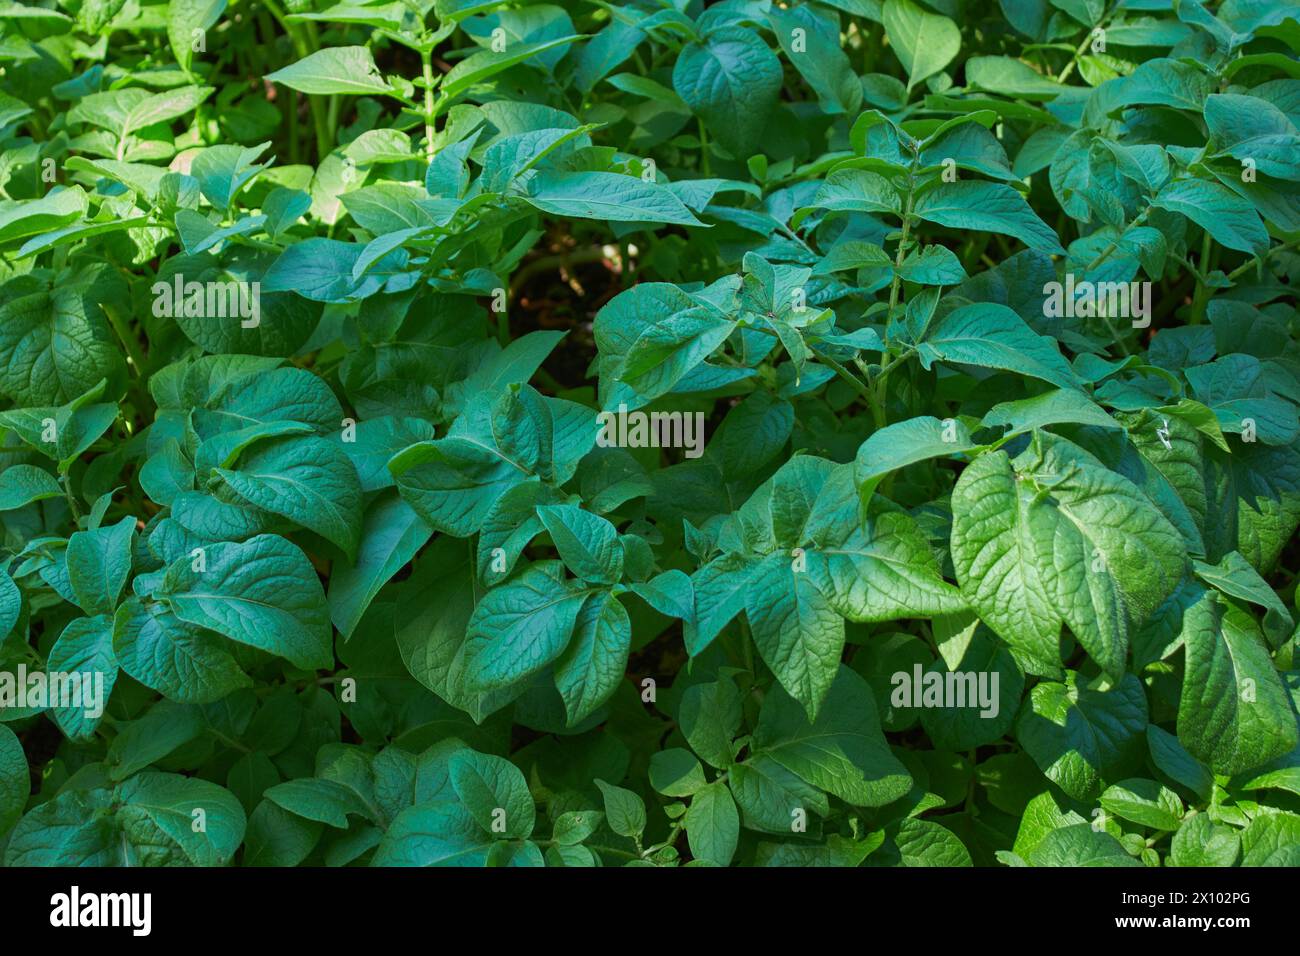 Junge Kartoffelpflanzen wachsen in einem 100 Liter großen Topf mit dunkelgrünen Blättern und einer Spinne, die sich unter ihnen versteckt!! Stockfoto